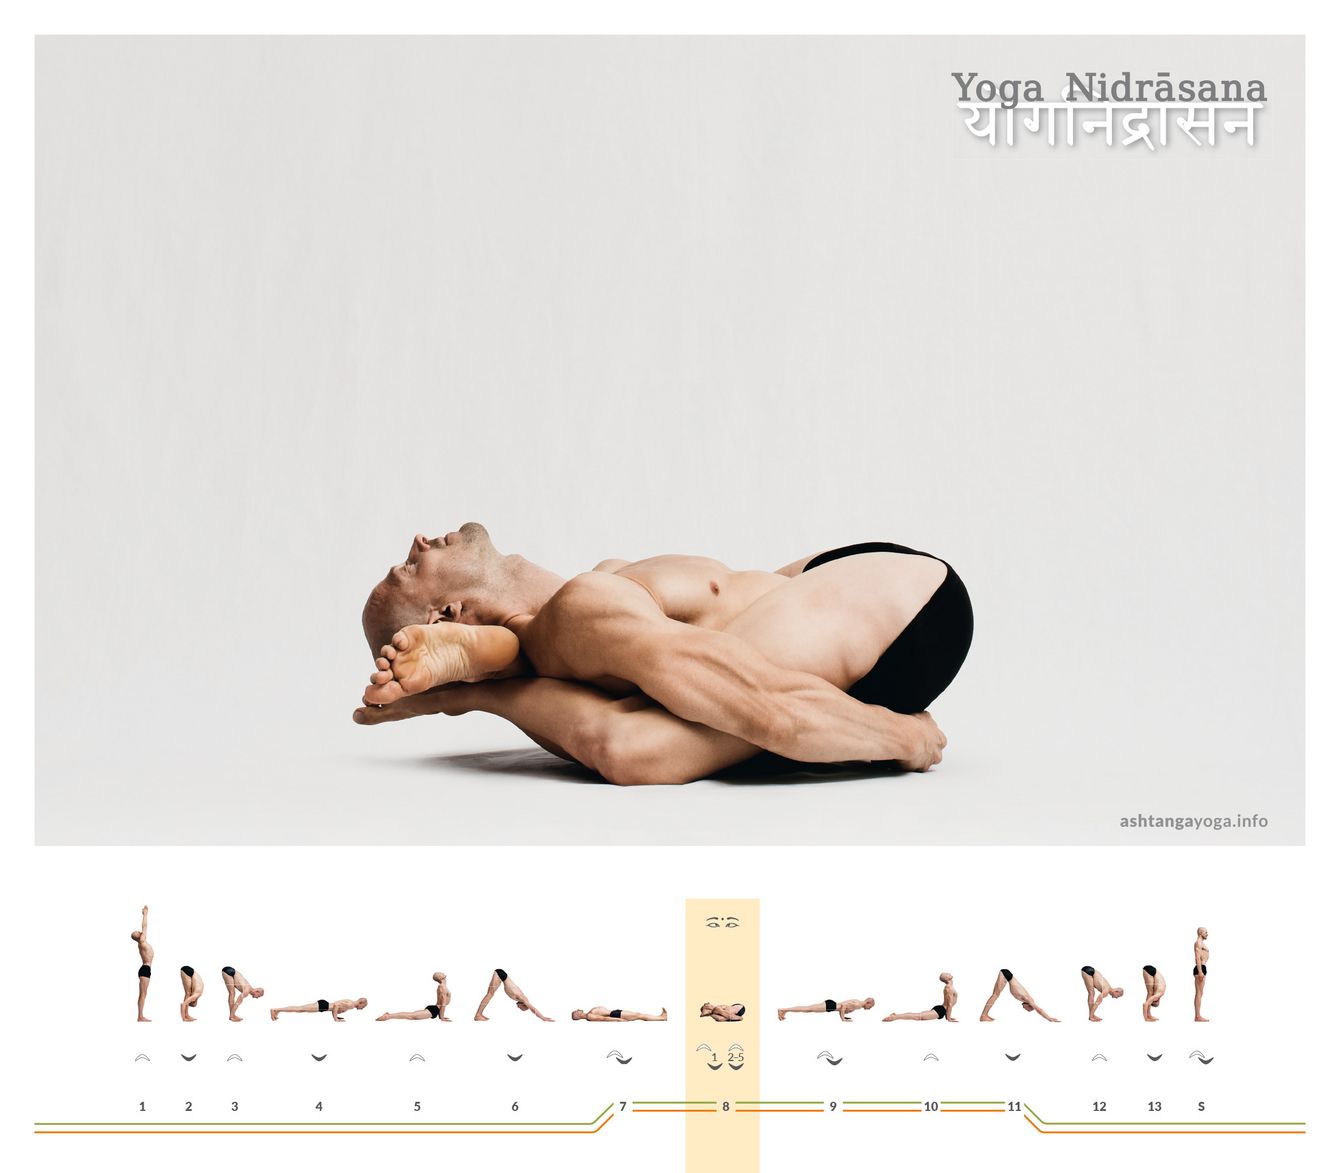 In der Haltung “Schlafender Yogi” befinden sich beide Füße hinter dem Kopf. Der*die Übende liegt auf dem Rücken und hat die Hände hinter dem unteren Rücken verschränkt - Yoga Nidrasana.